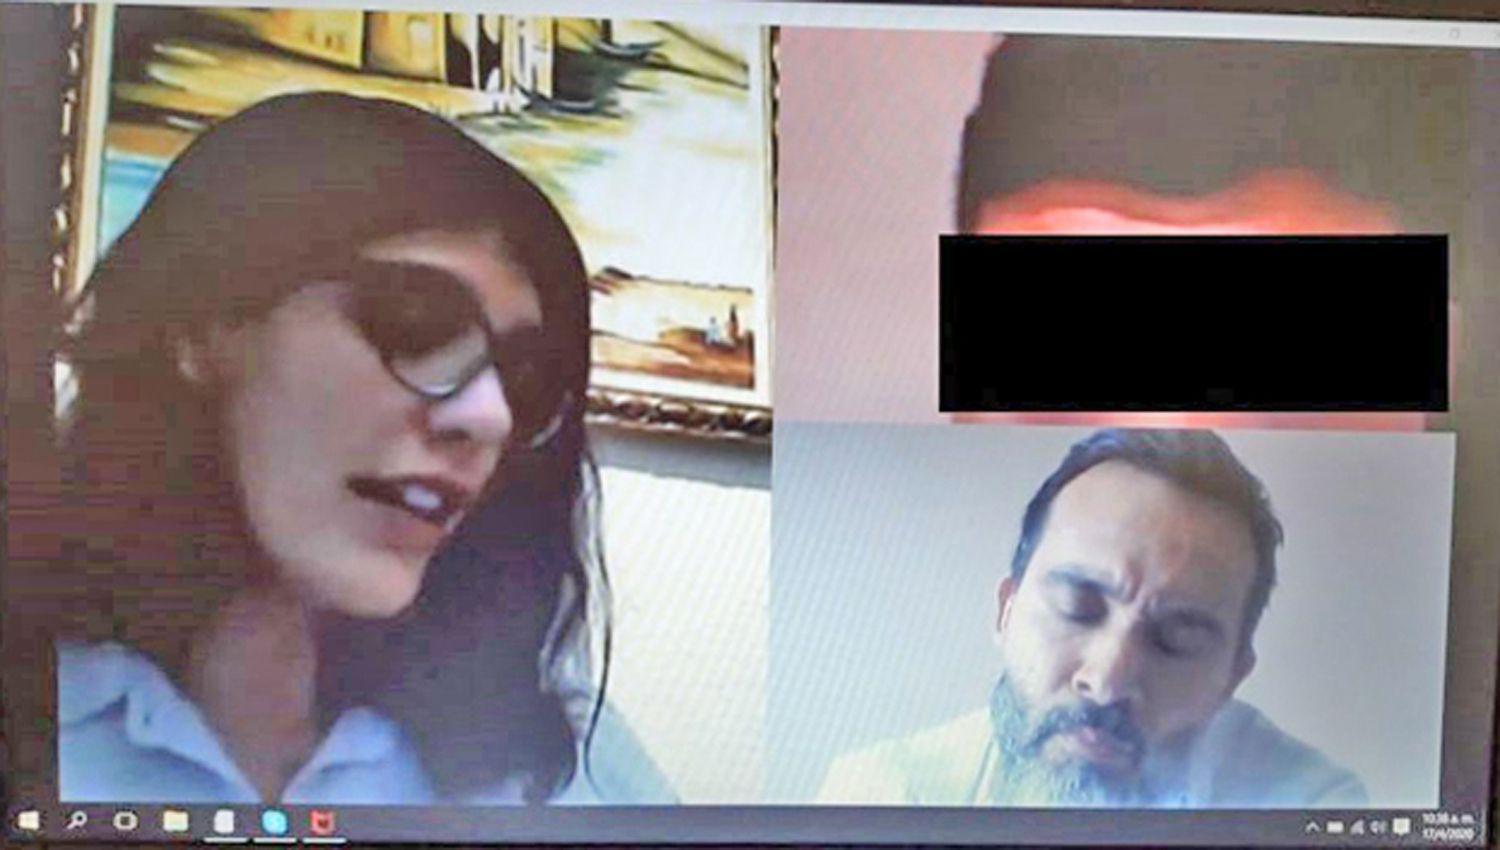 Vía Skype la Dra Monte Bitar tomó declaración al sospechoso asistido por su abogado